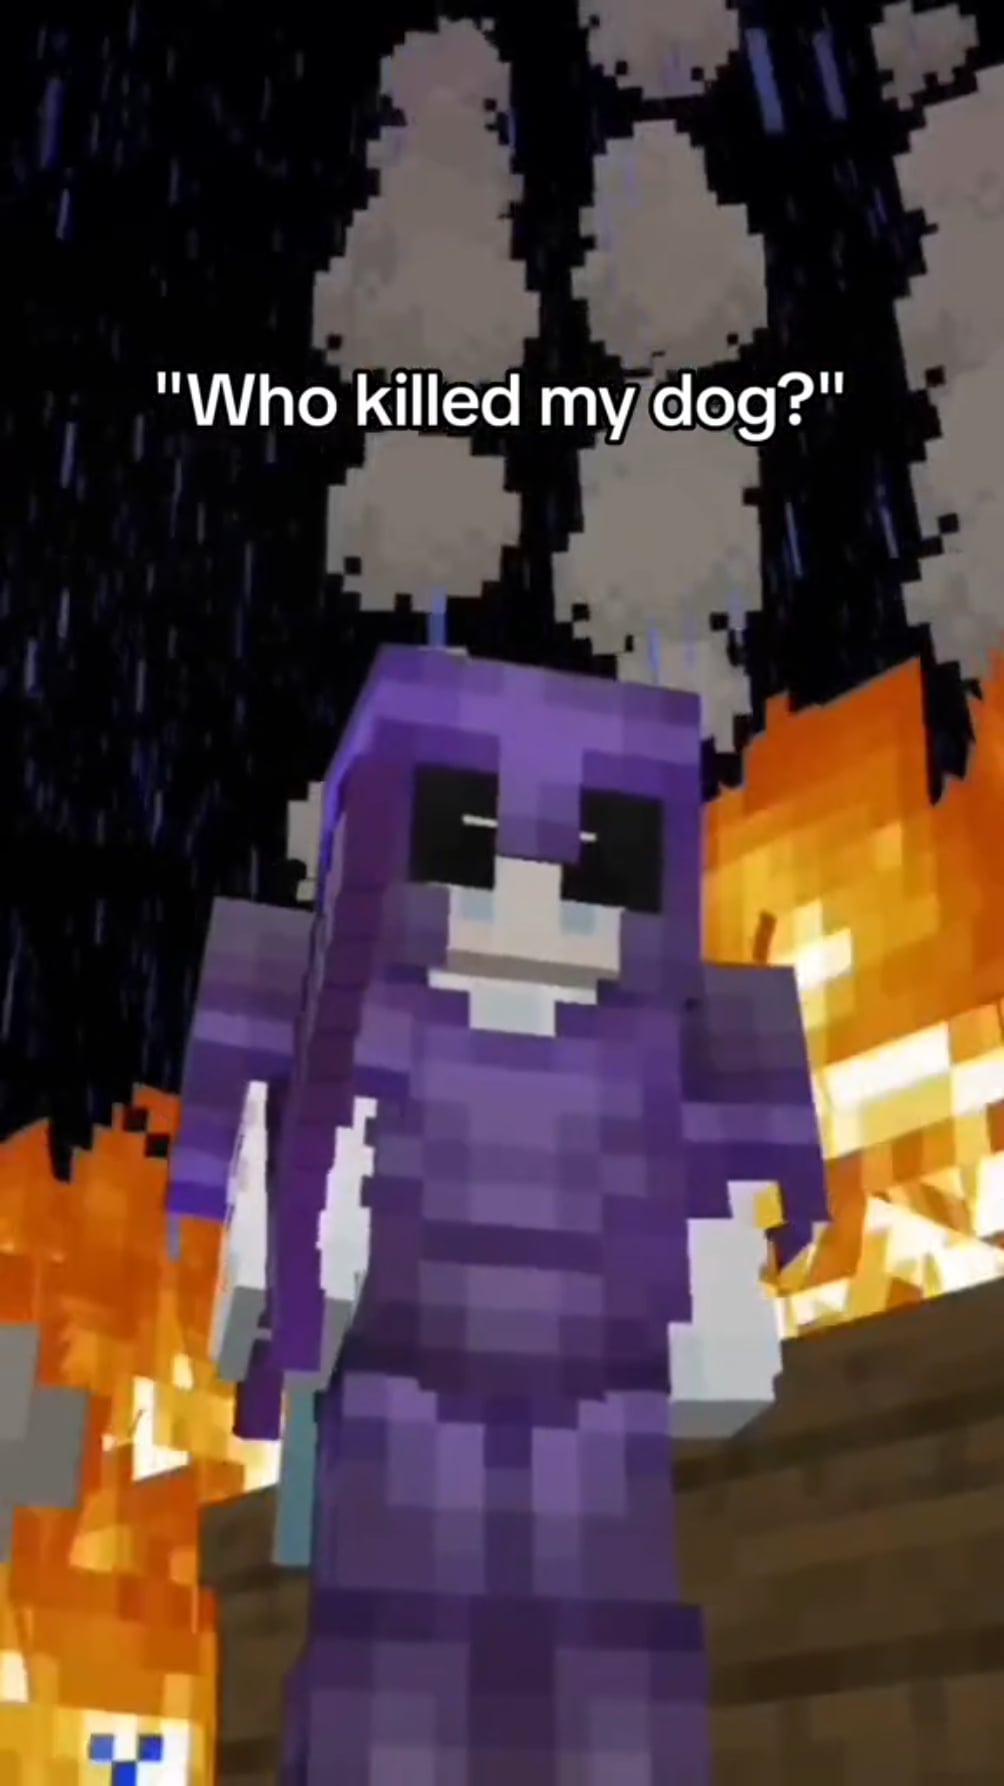 Minecraft Memes - Who TF killed my dog? 😡